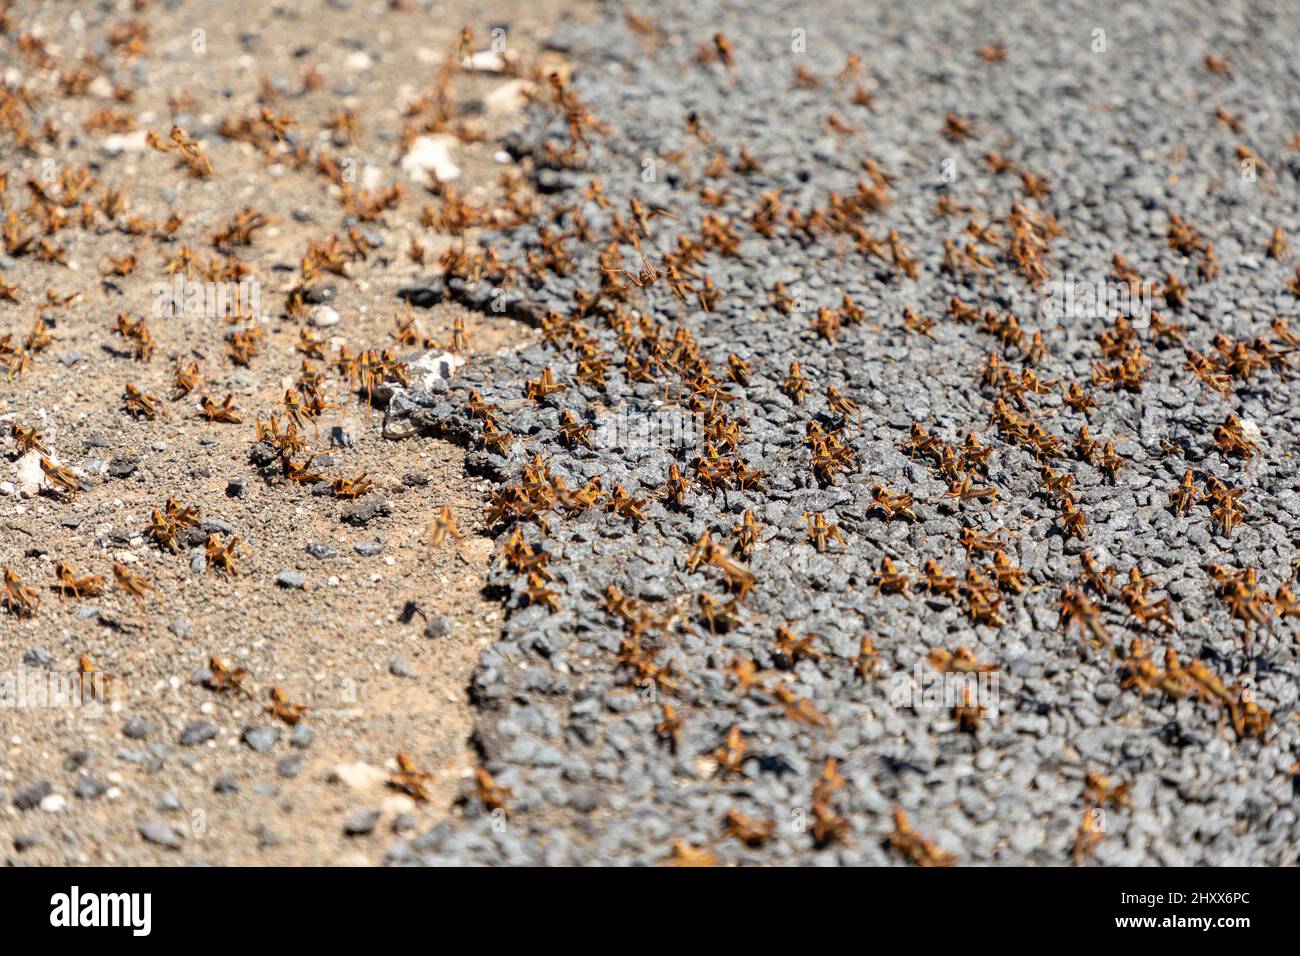 Fuoco selettivo su uno sciame di locusta marrone. Metà di loro su una superficie asfaltata e l'altra metà sulla ghiaia accanto alla strada. La locusta è un pla Foto Stock